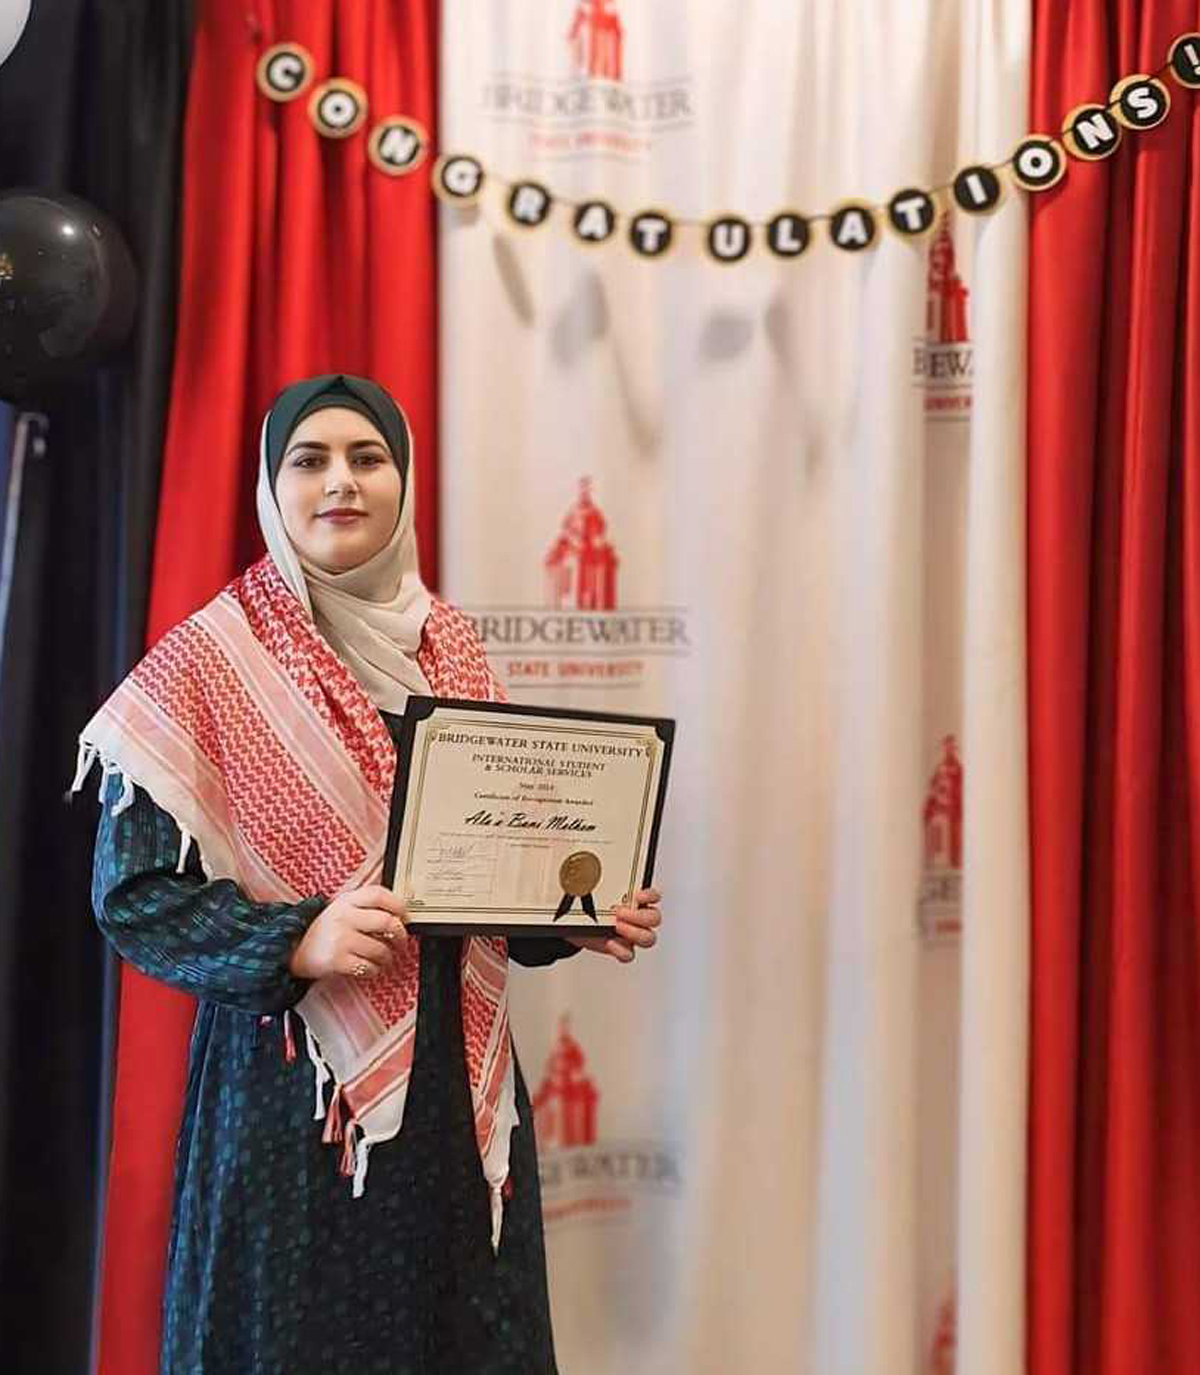 طالبة من اليرموك تفوز بجائزة أطروحة خريجي جامعة بريدج ووتر الأميركية